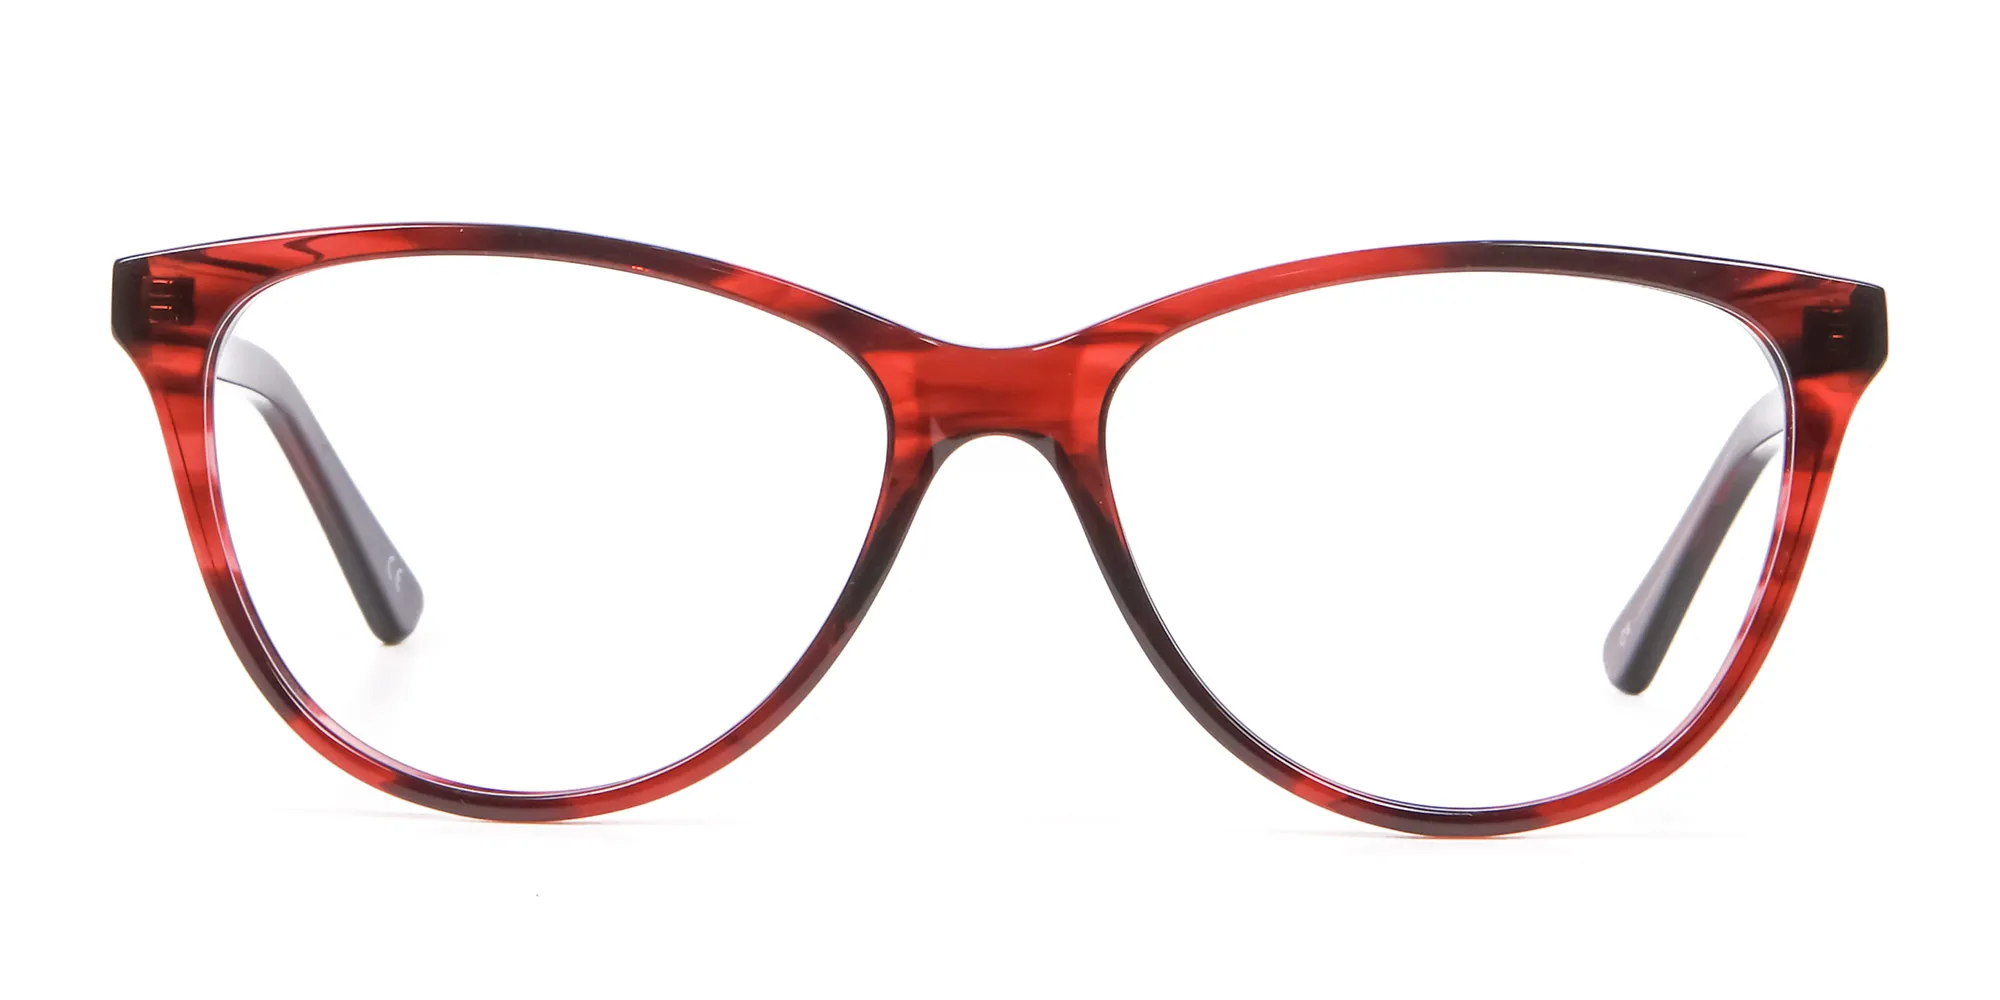 Designer Red Cat Eye Glasses for Women - 1